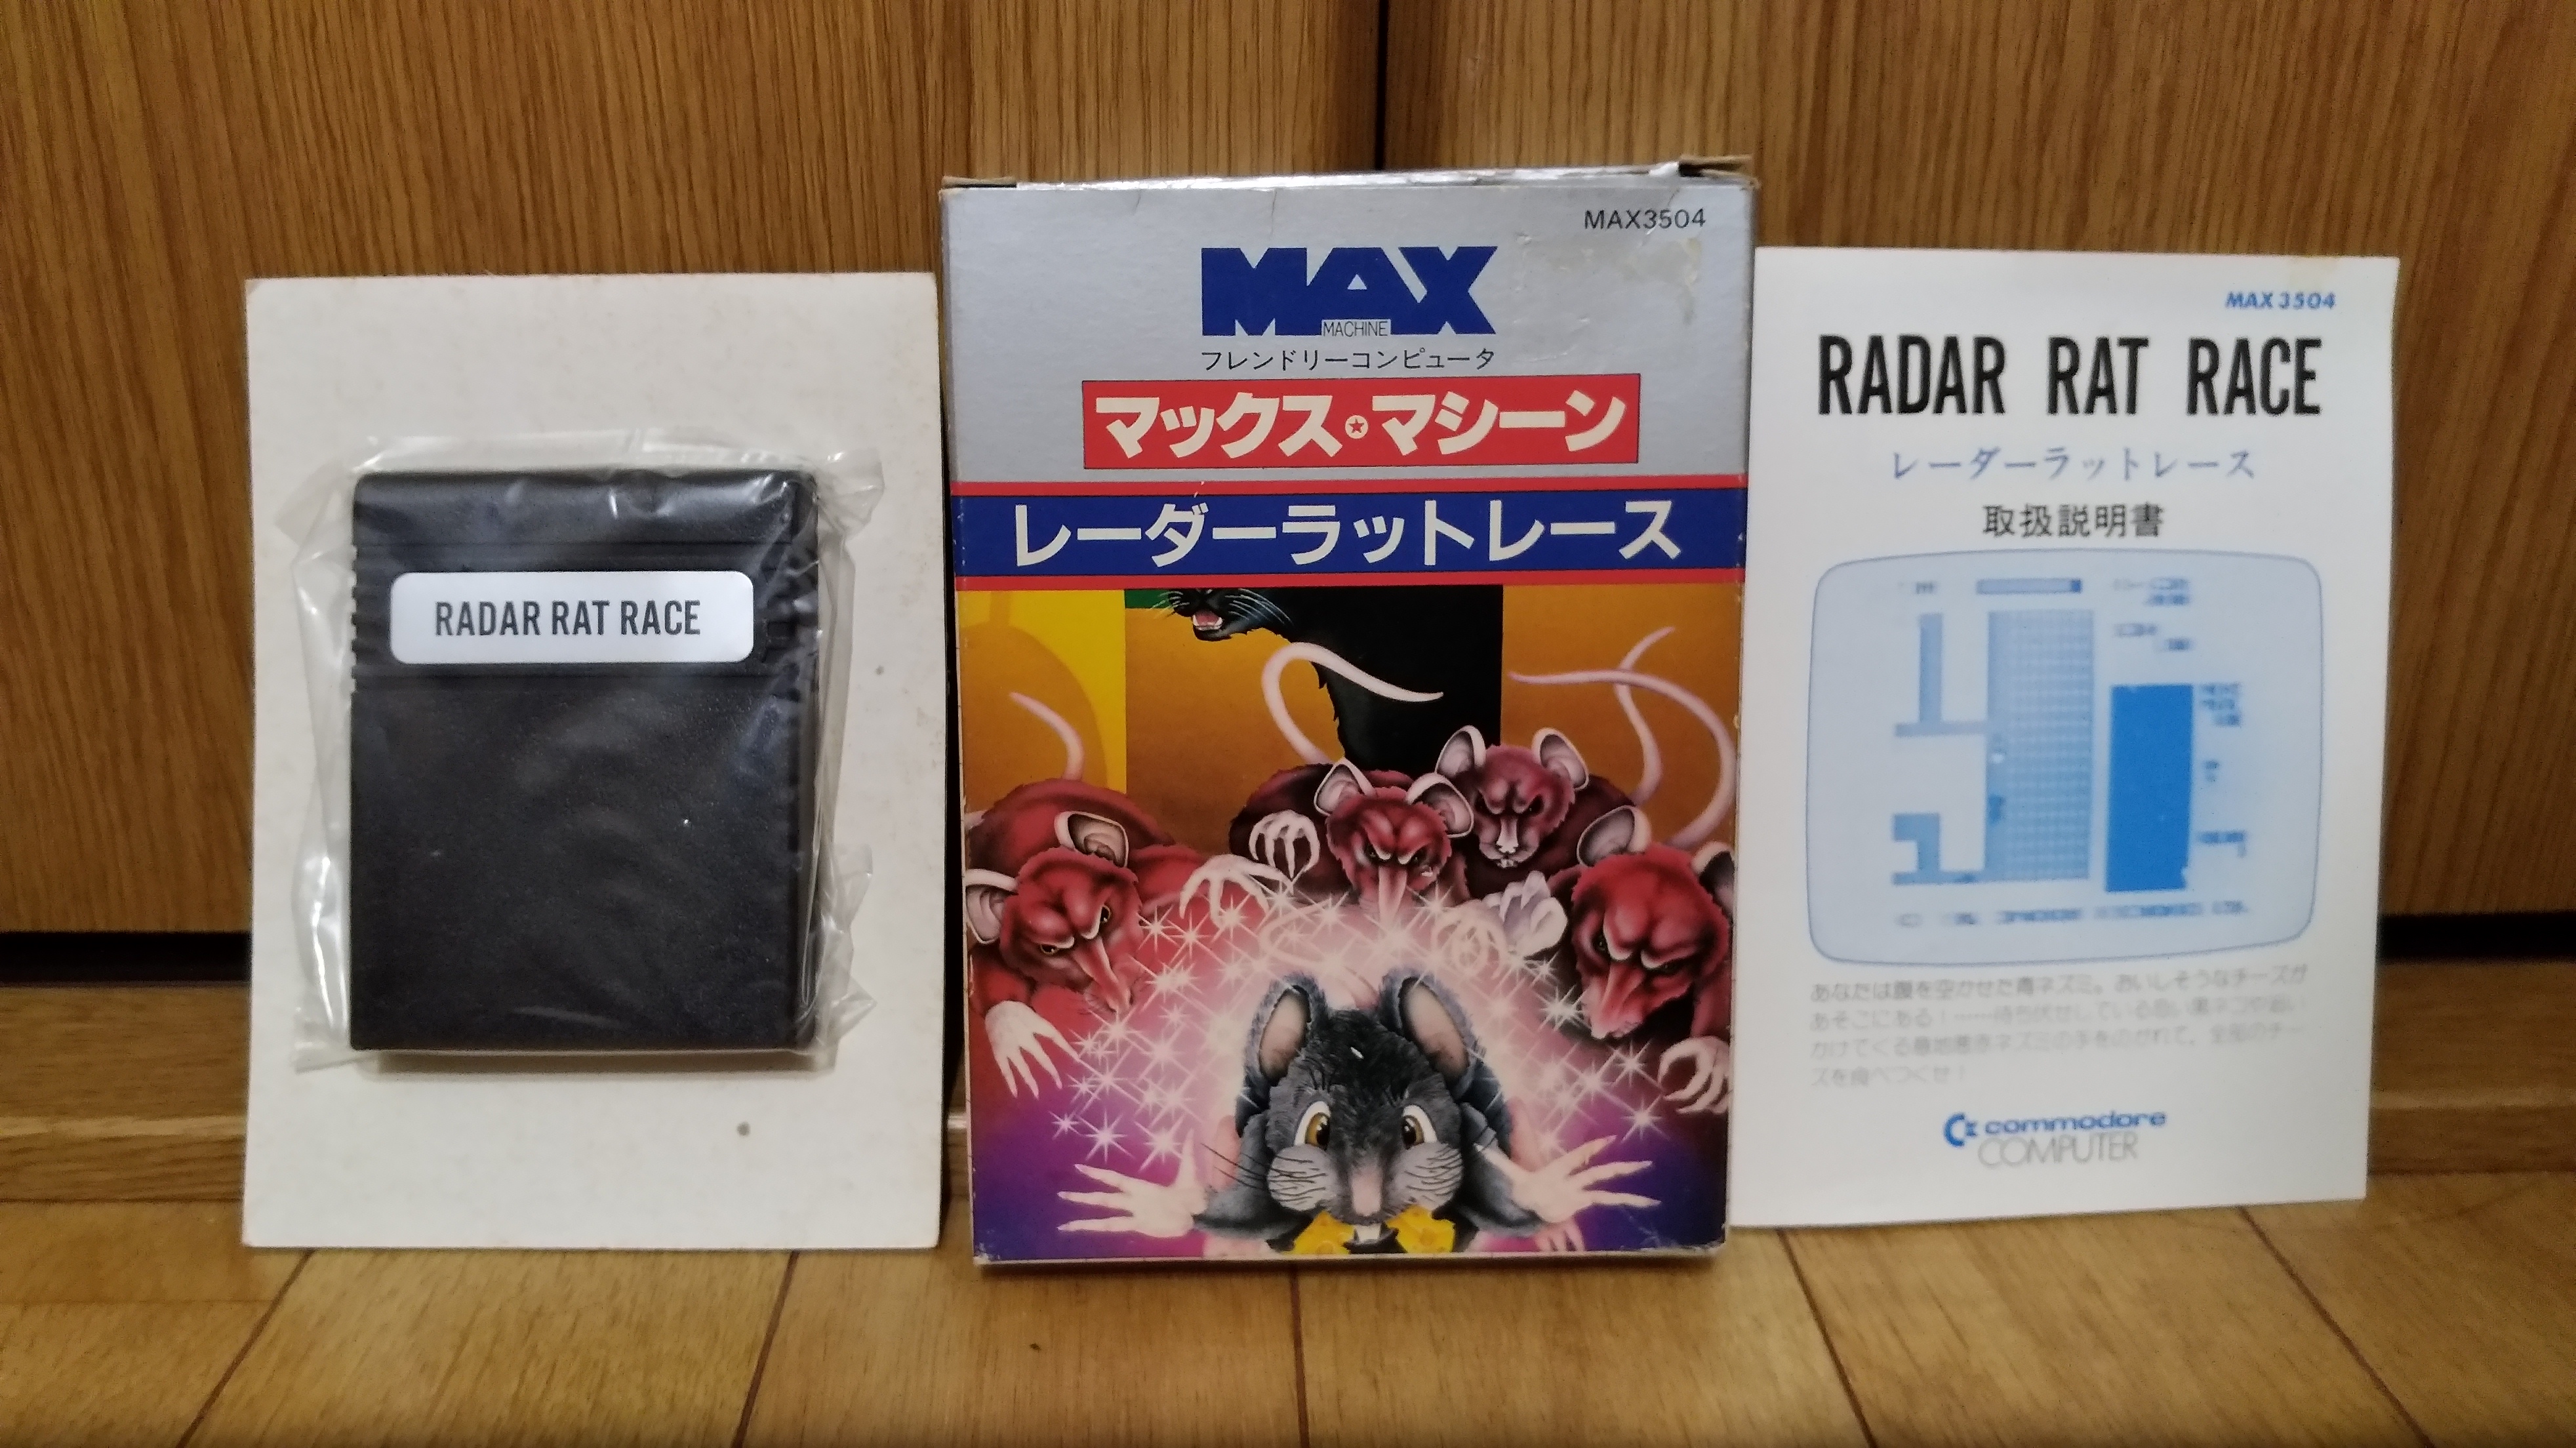 マックスマシーン – Commodore Fan in Japan